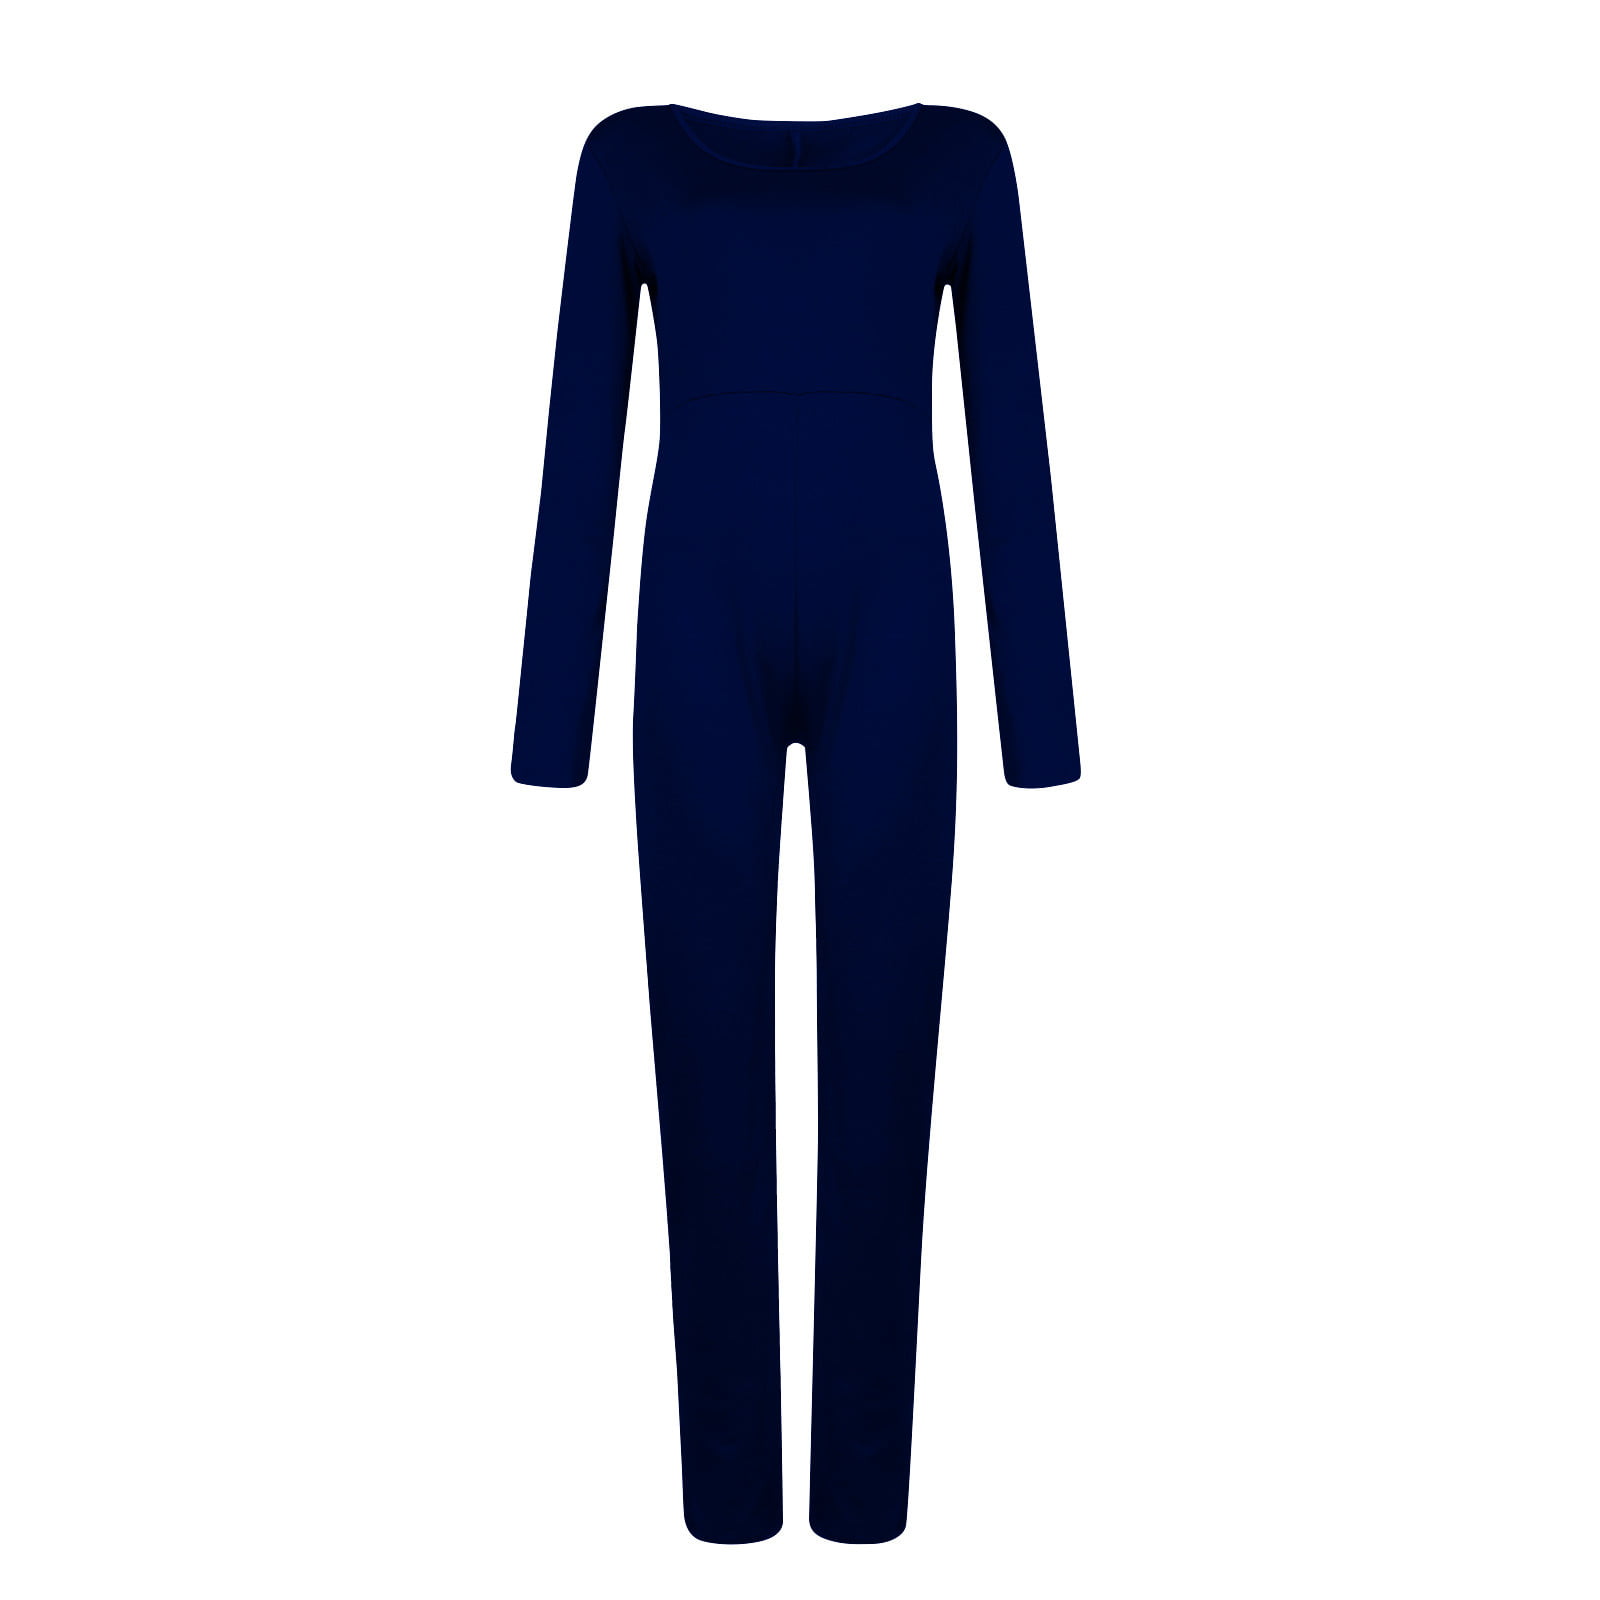 højt Kommunisme vigtigste Cuoff Women's Fashion Solid Colour FiLong Sleeve Jumpsuit - Walmart.com